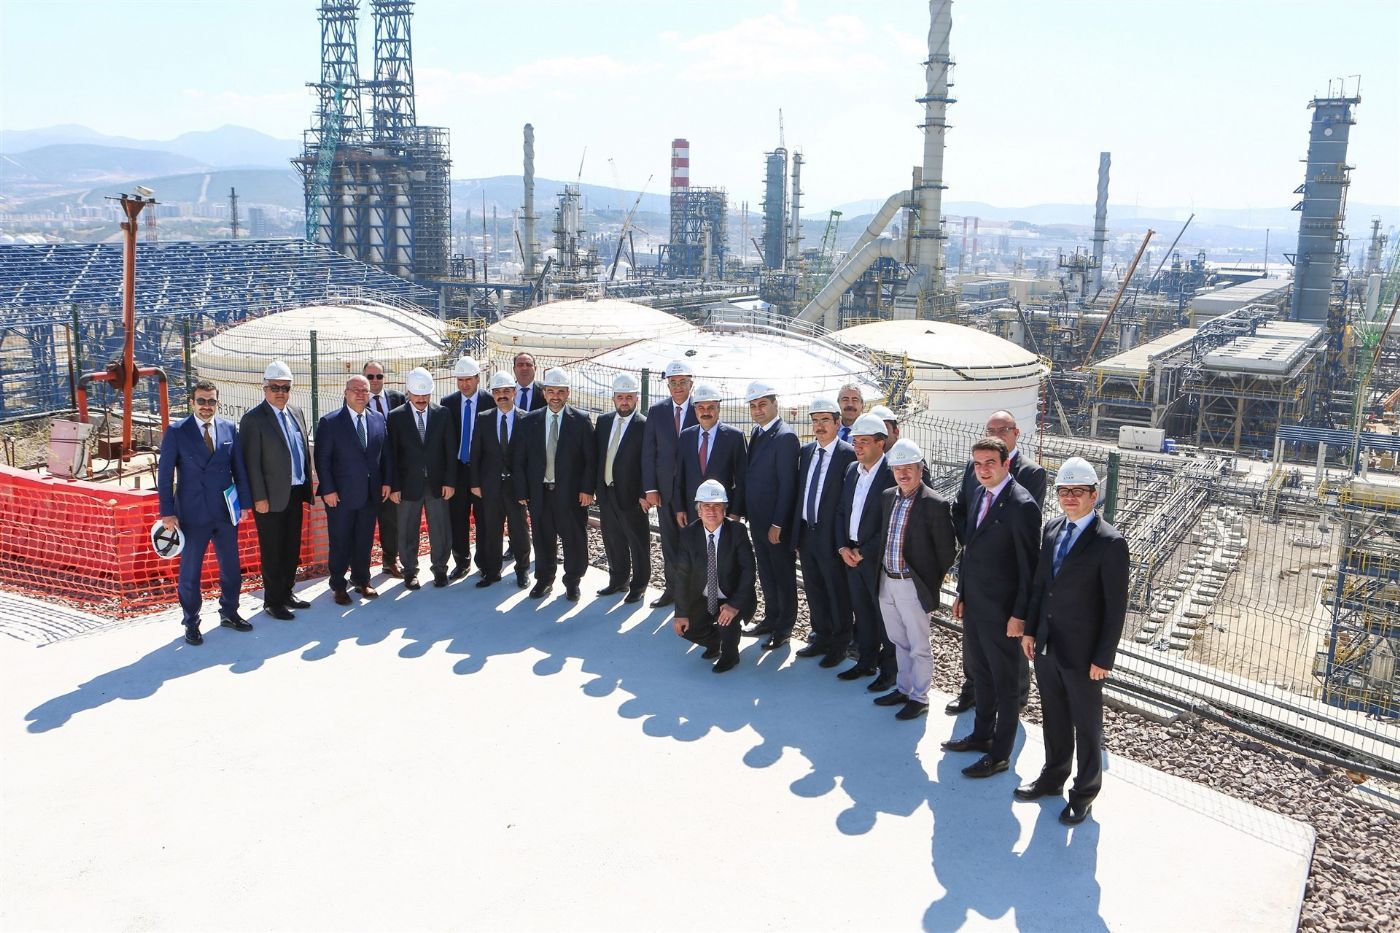 EMRA delegation visits STAR Refinery